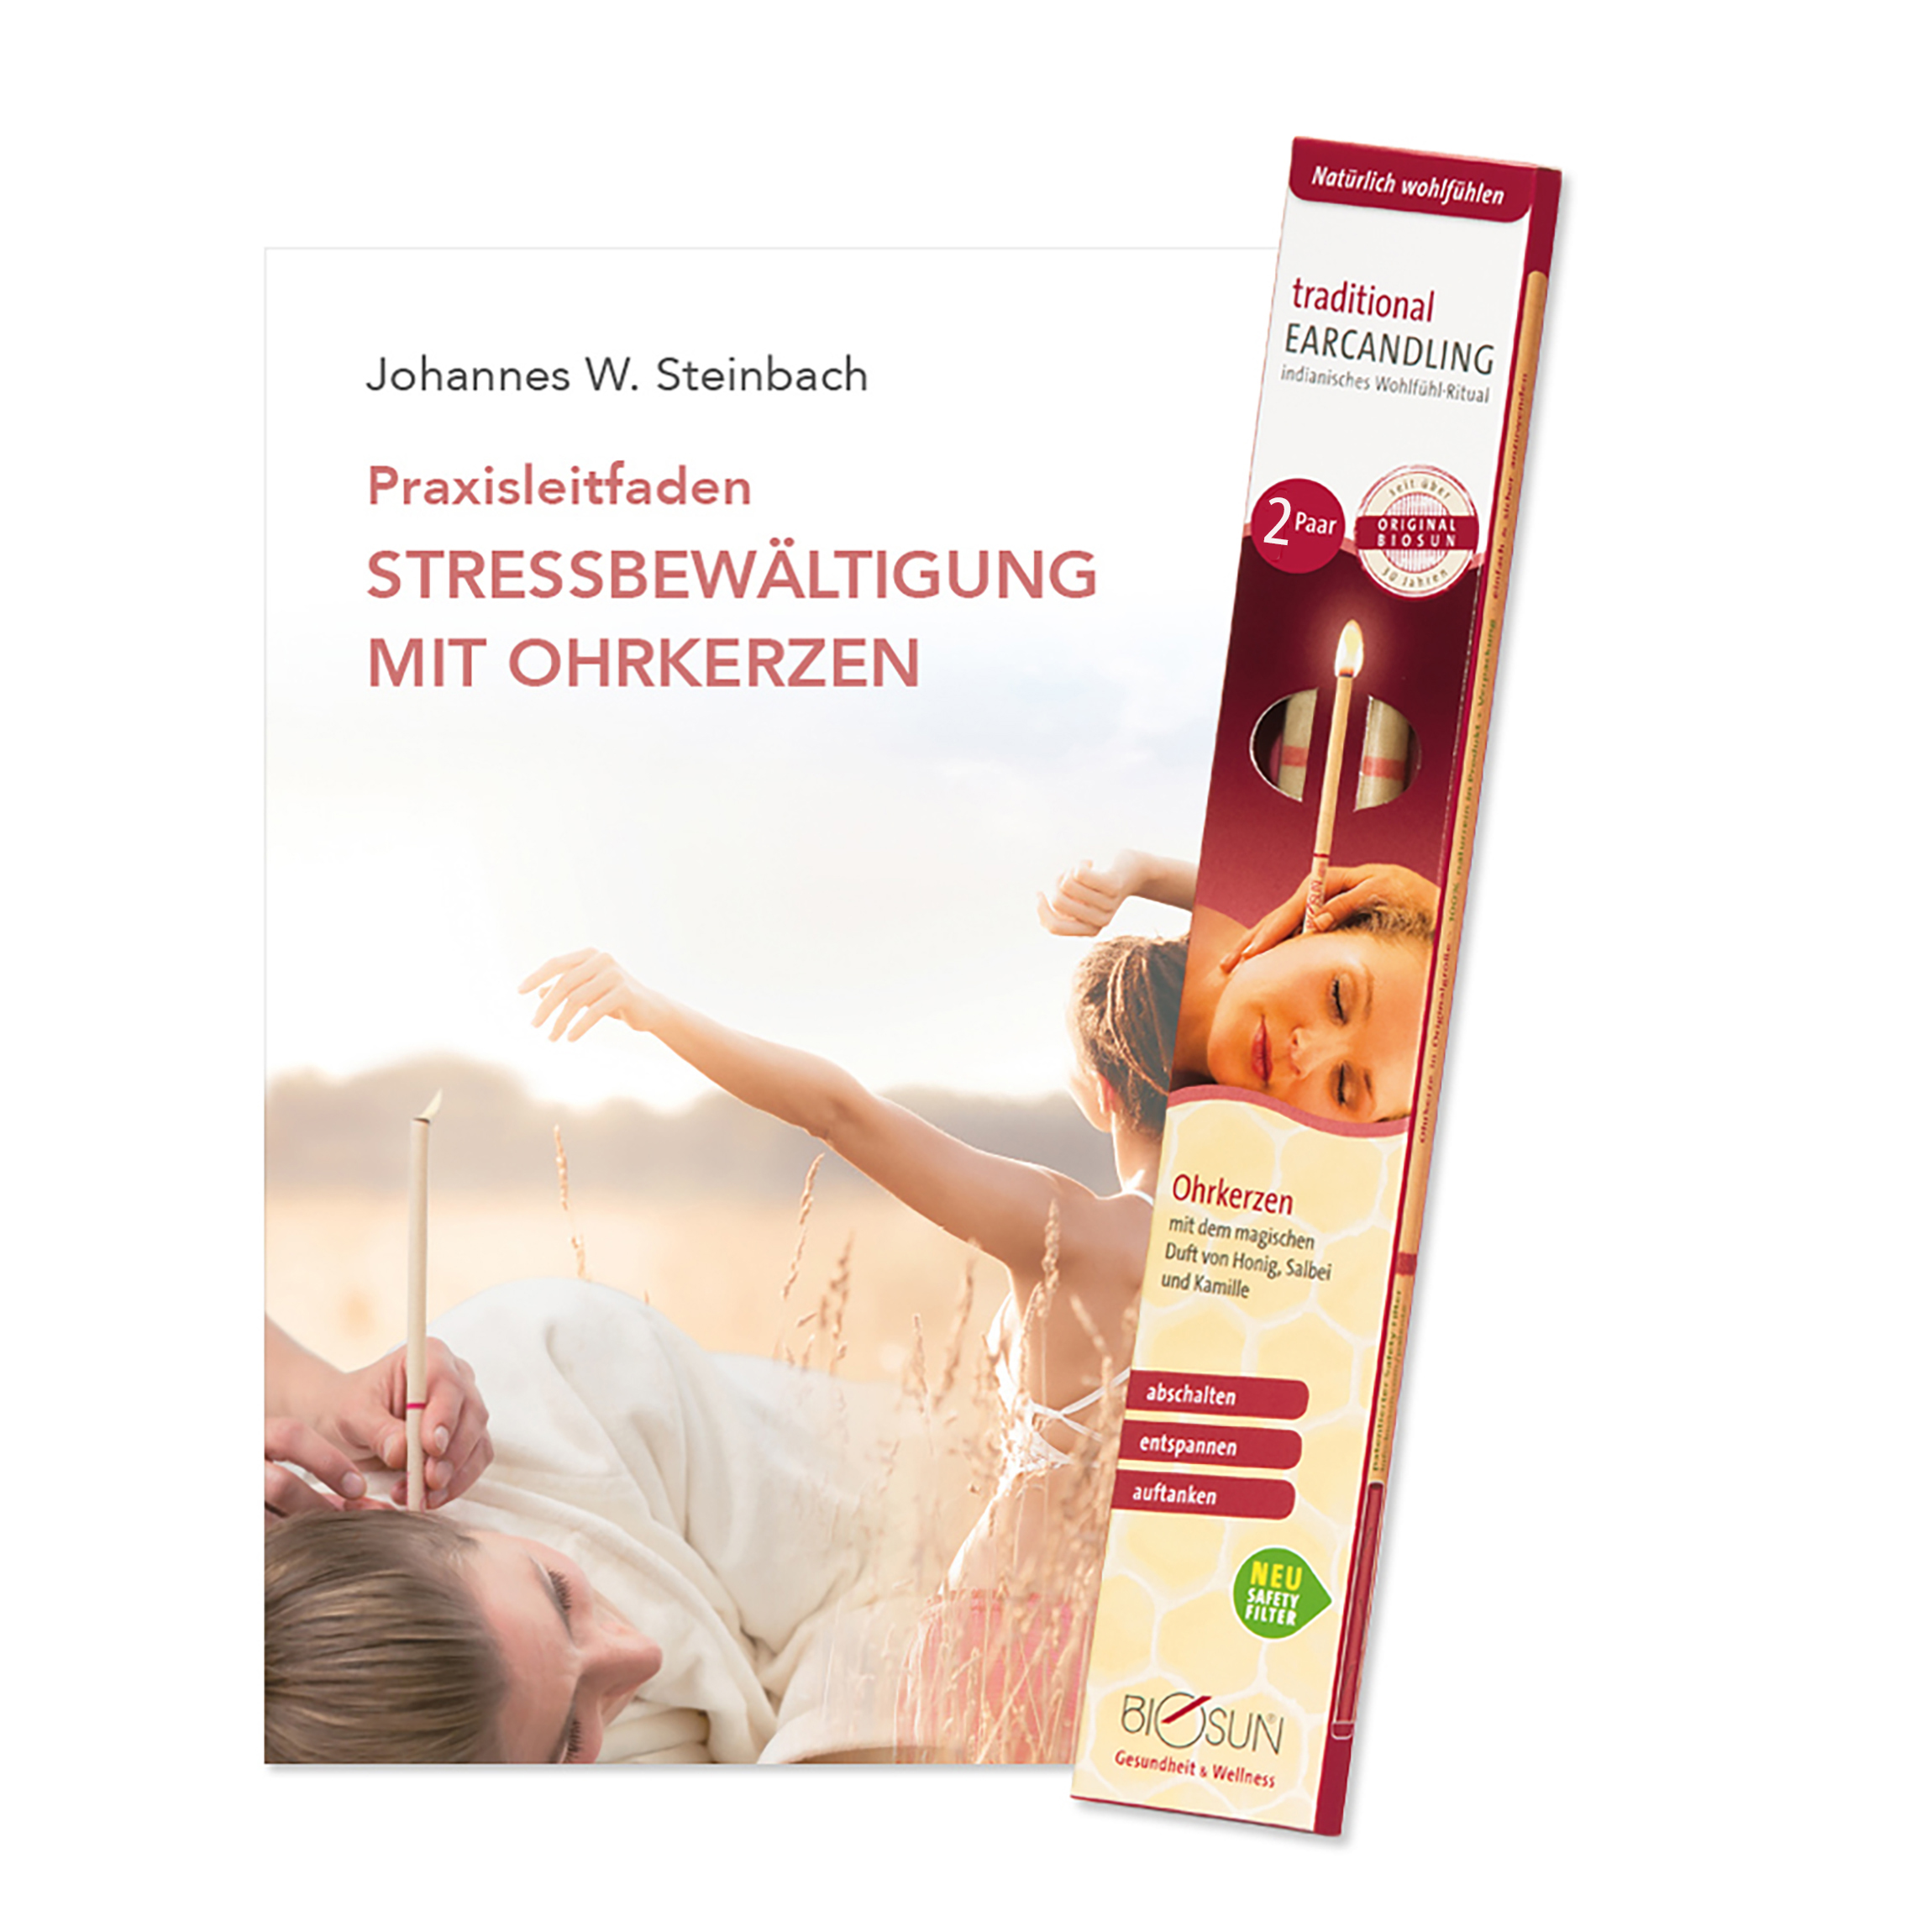 AKTION - Buch - "Stressbewältigung mit Ohrkerzen" + 2 Paar traditional Ohrkerzen